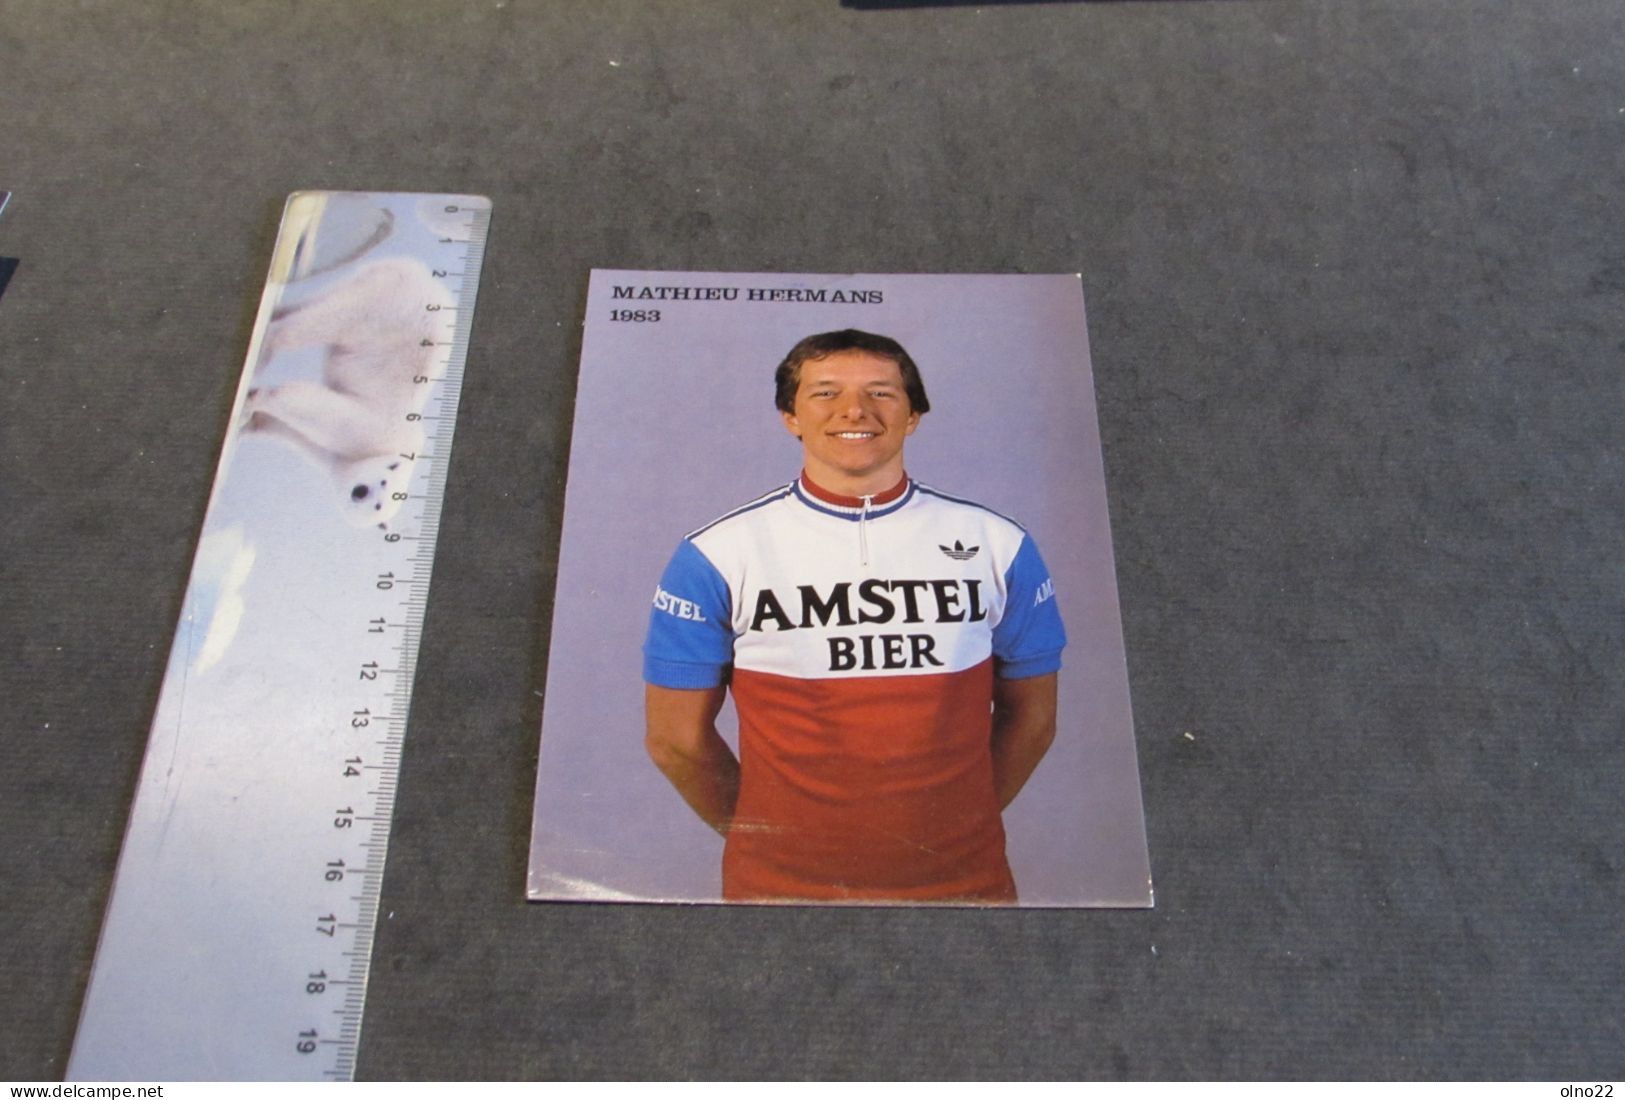 MATHIEU HERMANS 1983  - AMSTEL BIER - PHOTO COULEURS - VOIR SCANS - Personalidades Deportivas